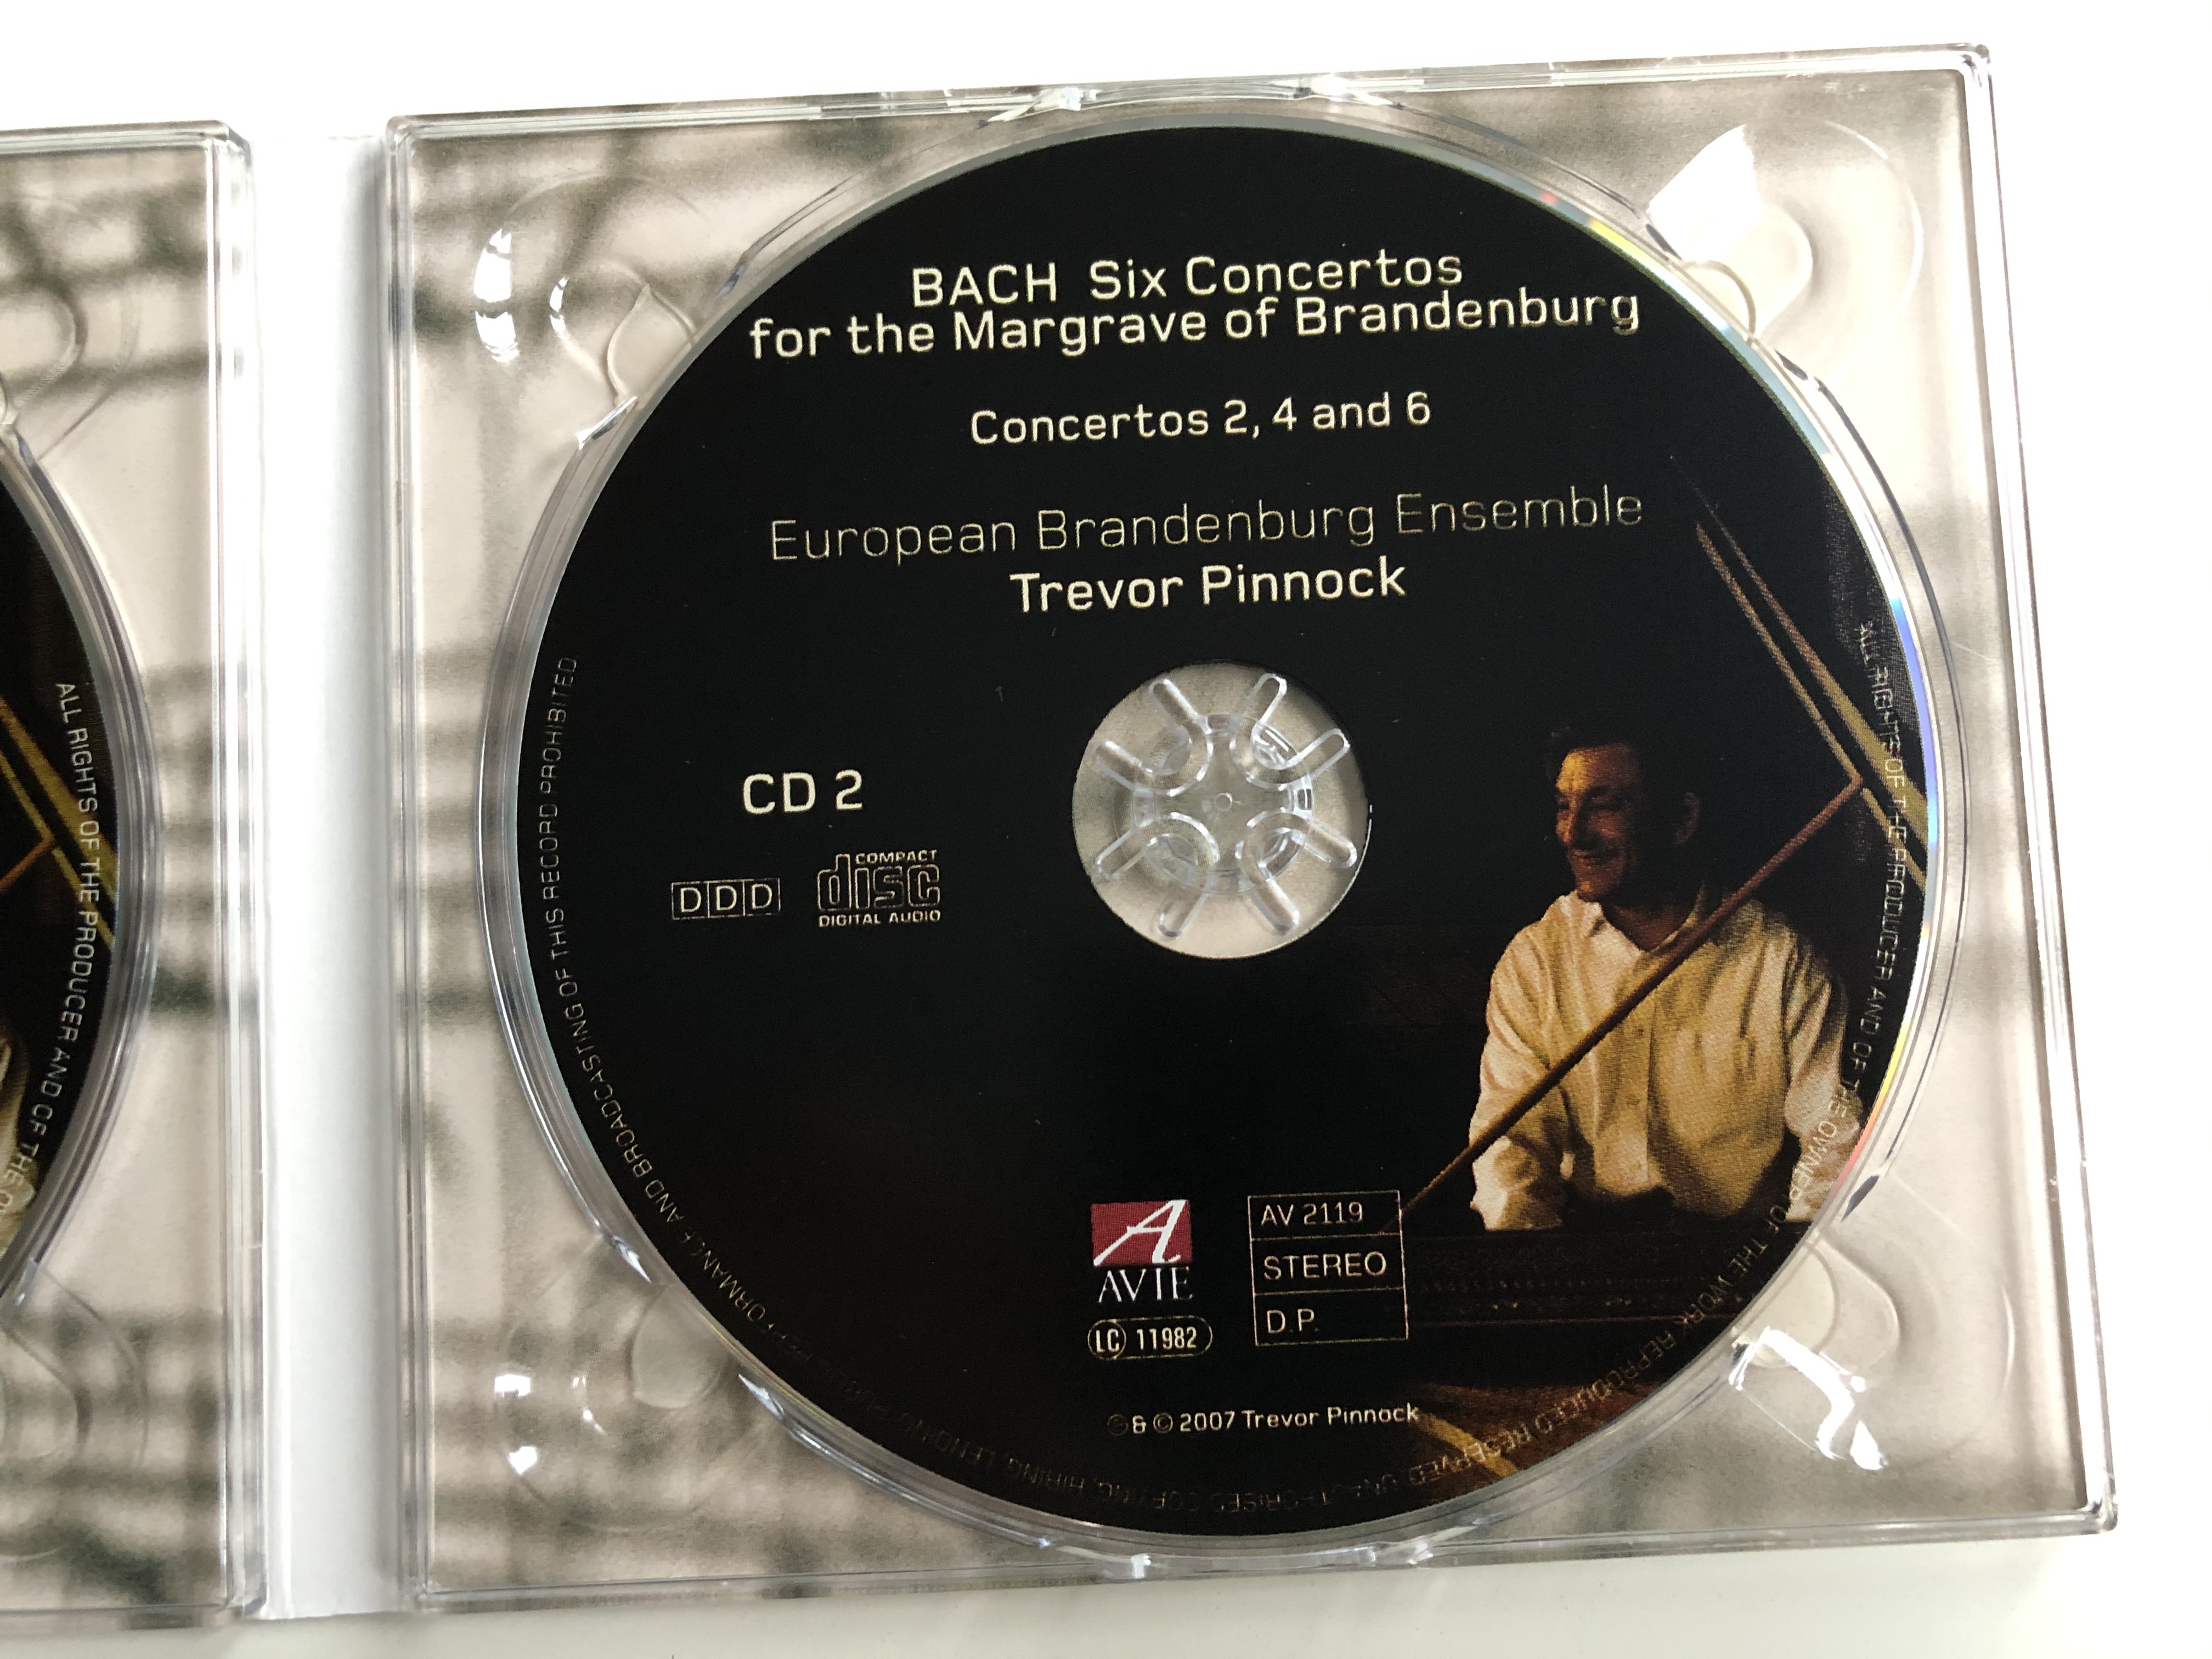 bach-six-concertos-for-the-margrave-of-brandenburg-trevor-pinnock-european-brandenburg-ensemble-avie-records-2x-audio-cd-2007-stereo-av-2119-5-.jpg